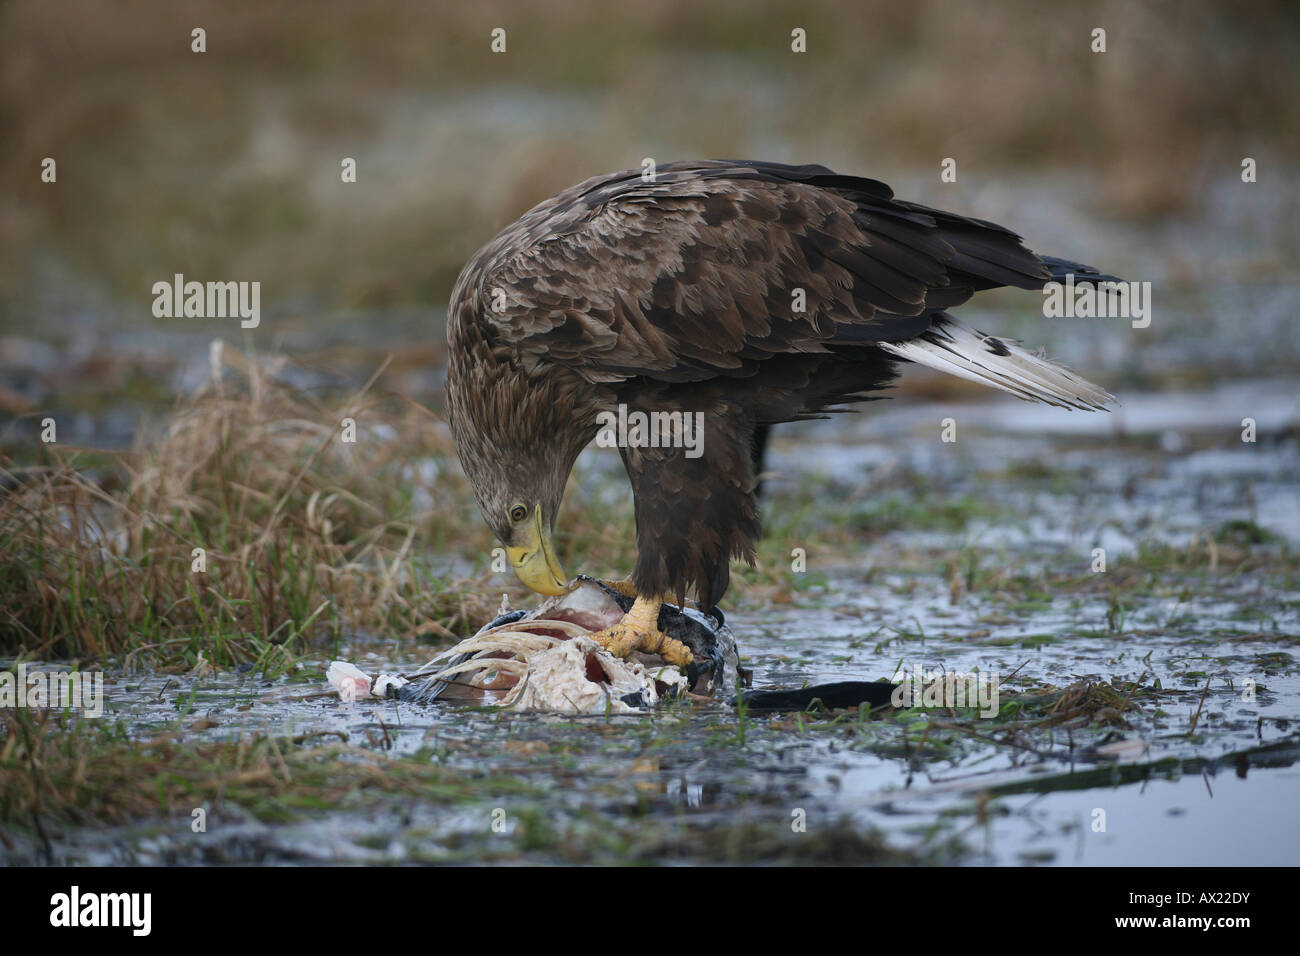 White-tailed Eagle or Sea Eagle (Haliaeetus albicilla), feeding on a fish Stock Photo